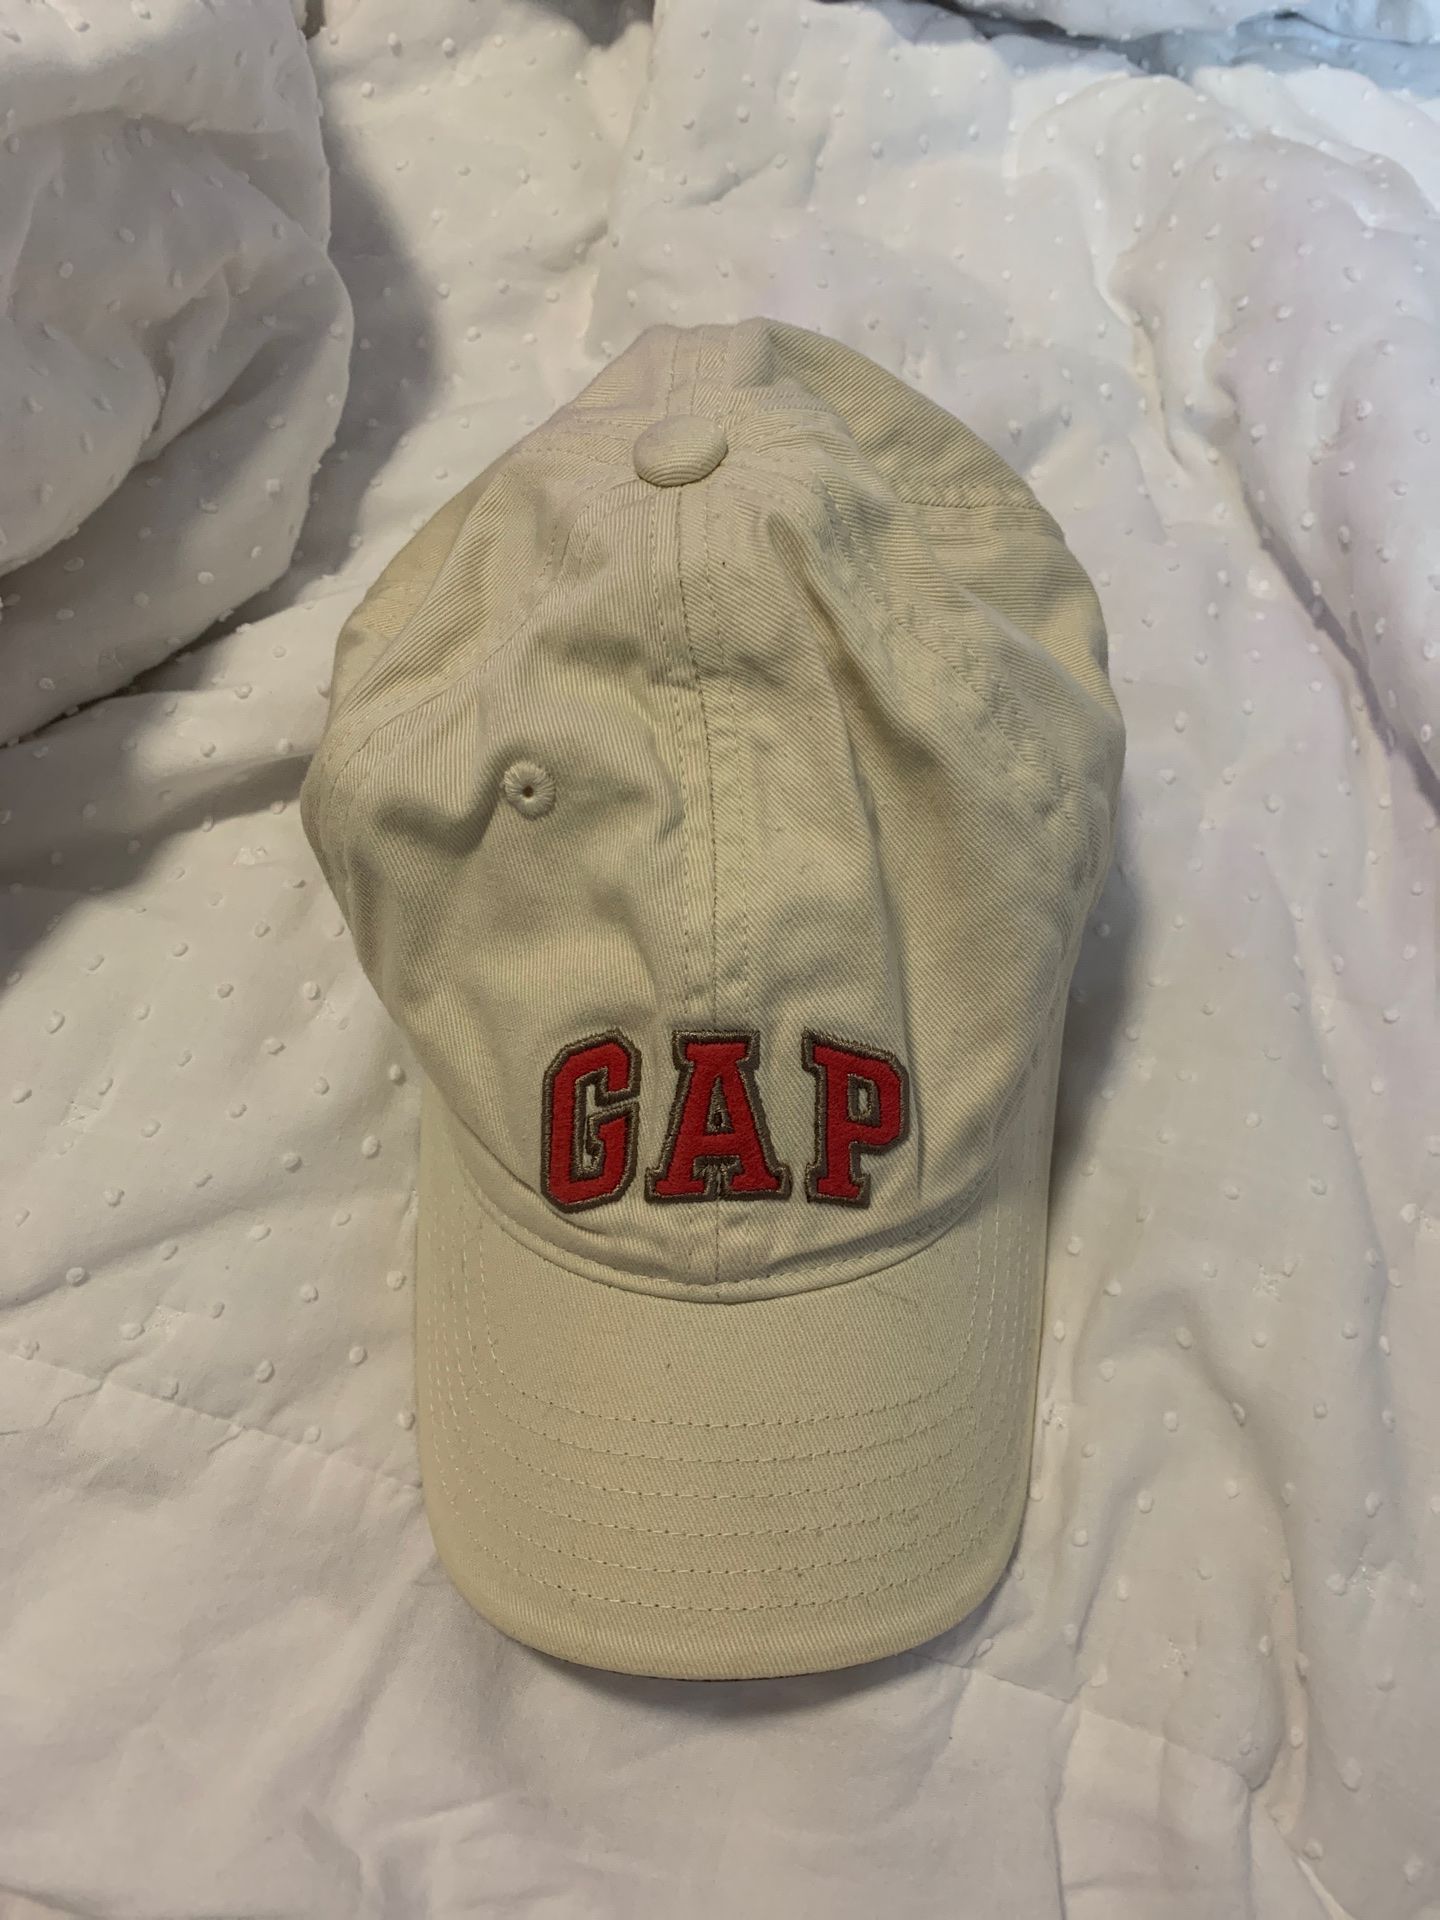 Vintage GAP hat used